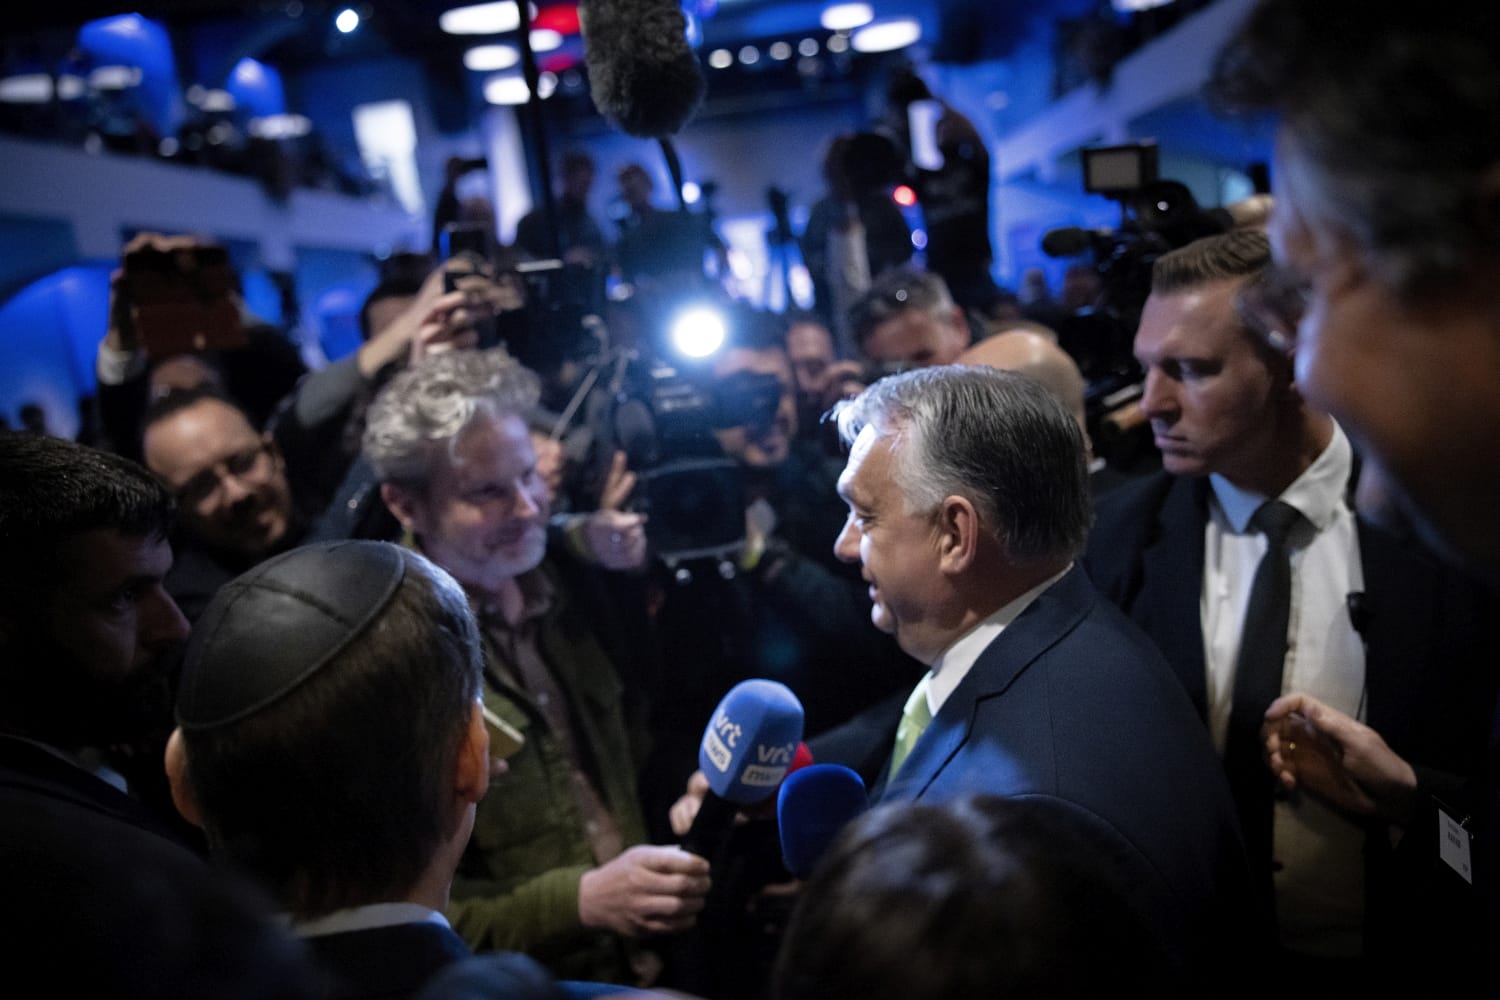 Az Orbán Viktor megjegyzése Európa helyzetéről: a szabadság és az elnyomás vékony játéka